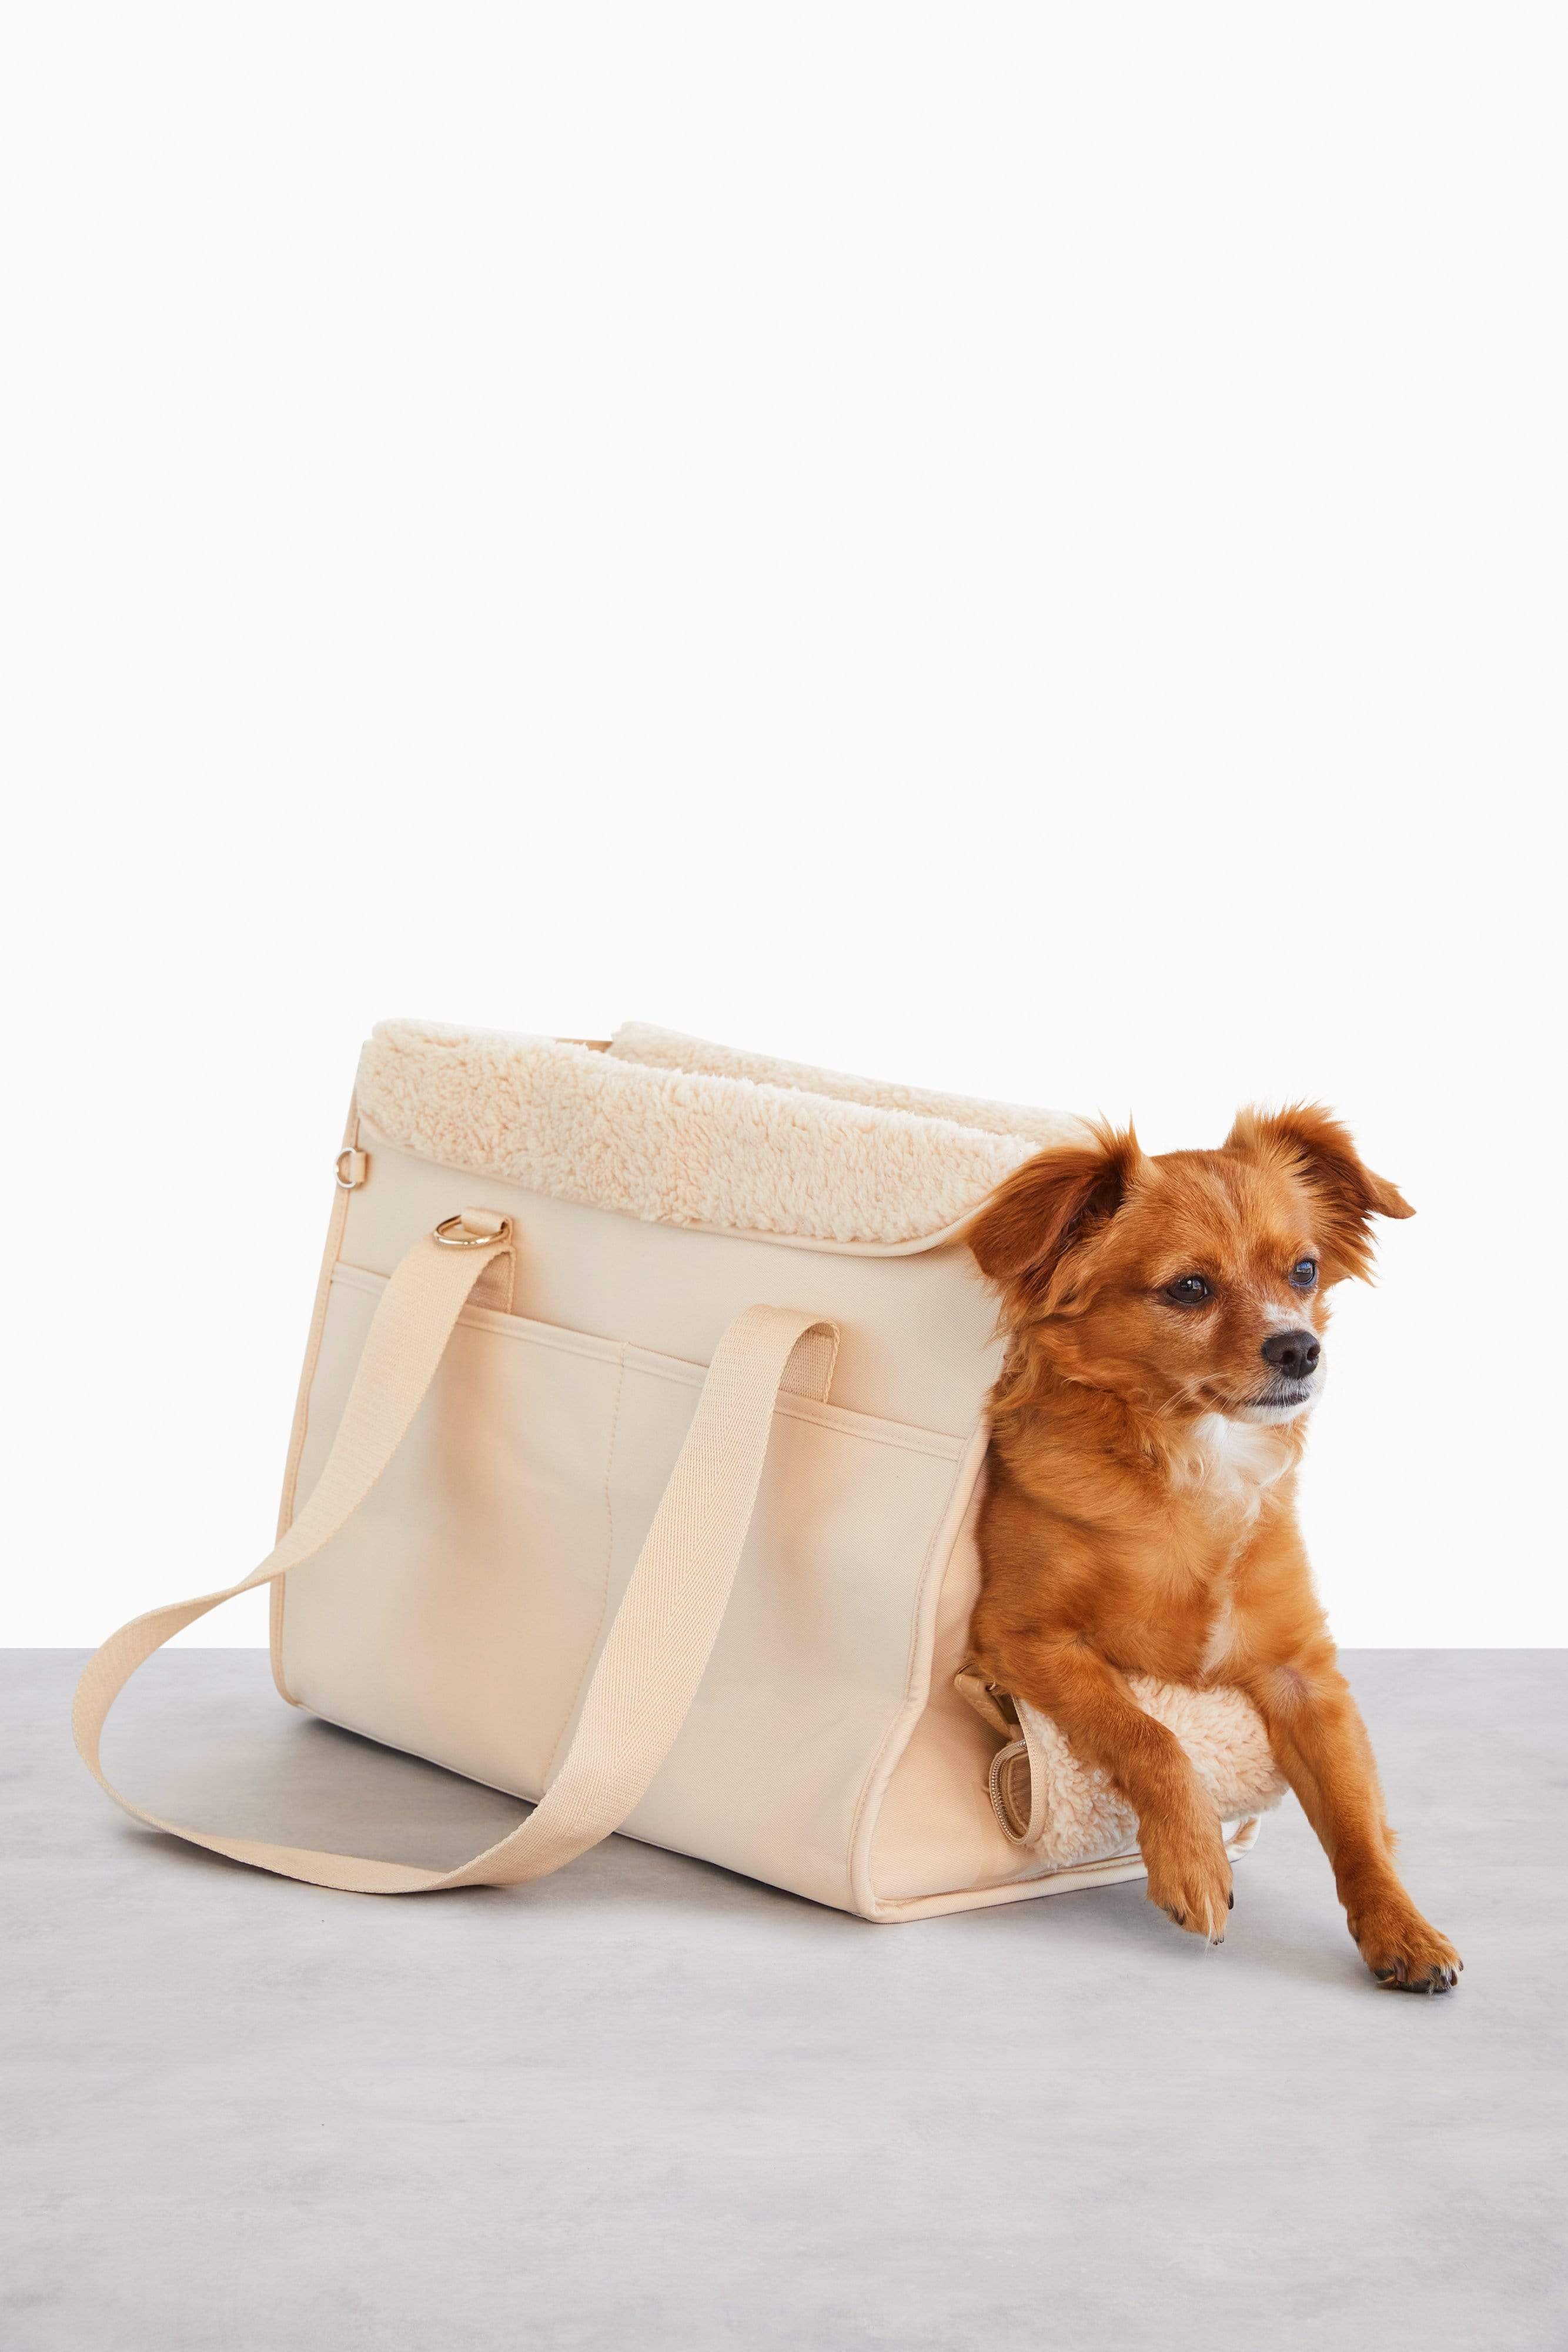 Haul Bag™ Dog Travel Bag | Ruffwear